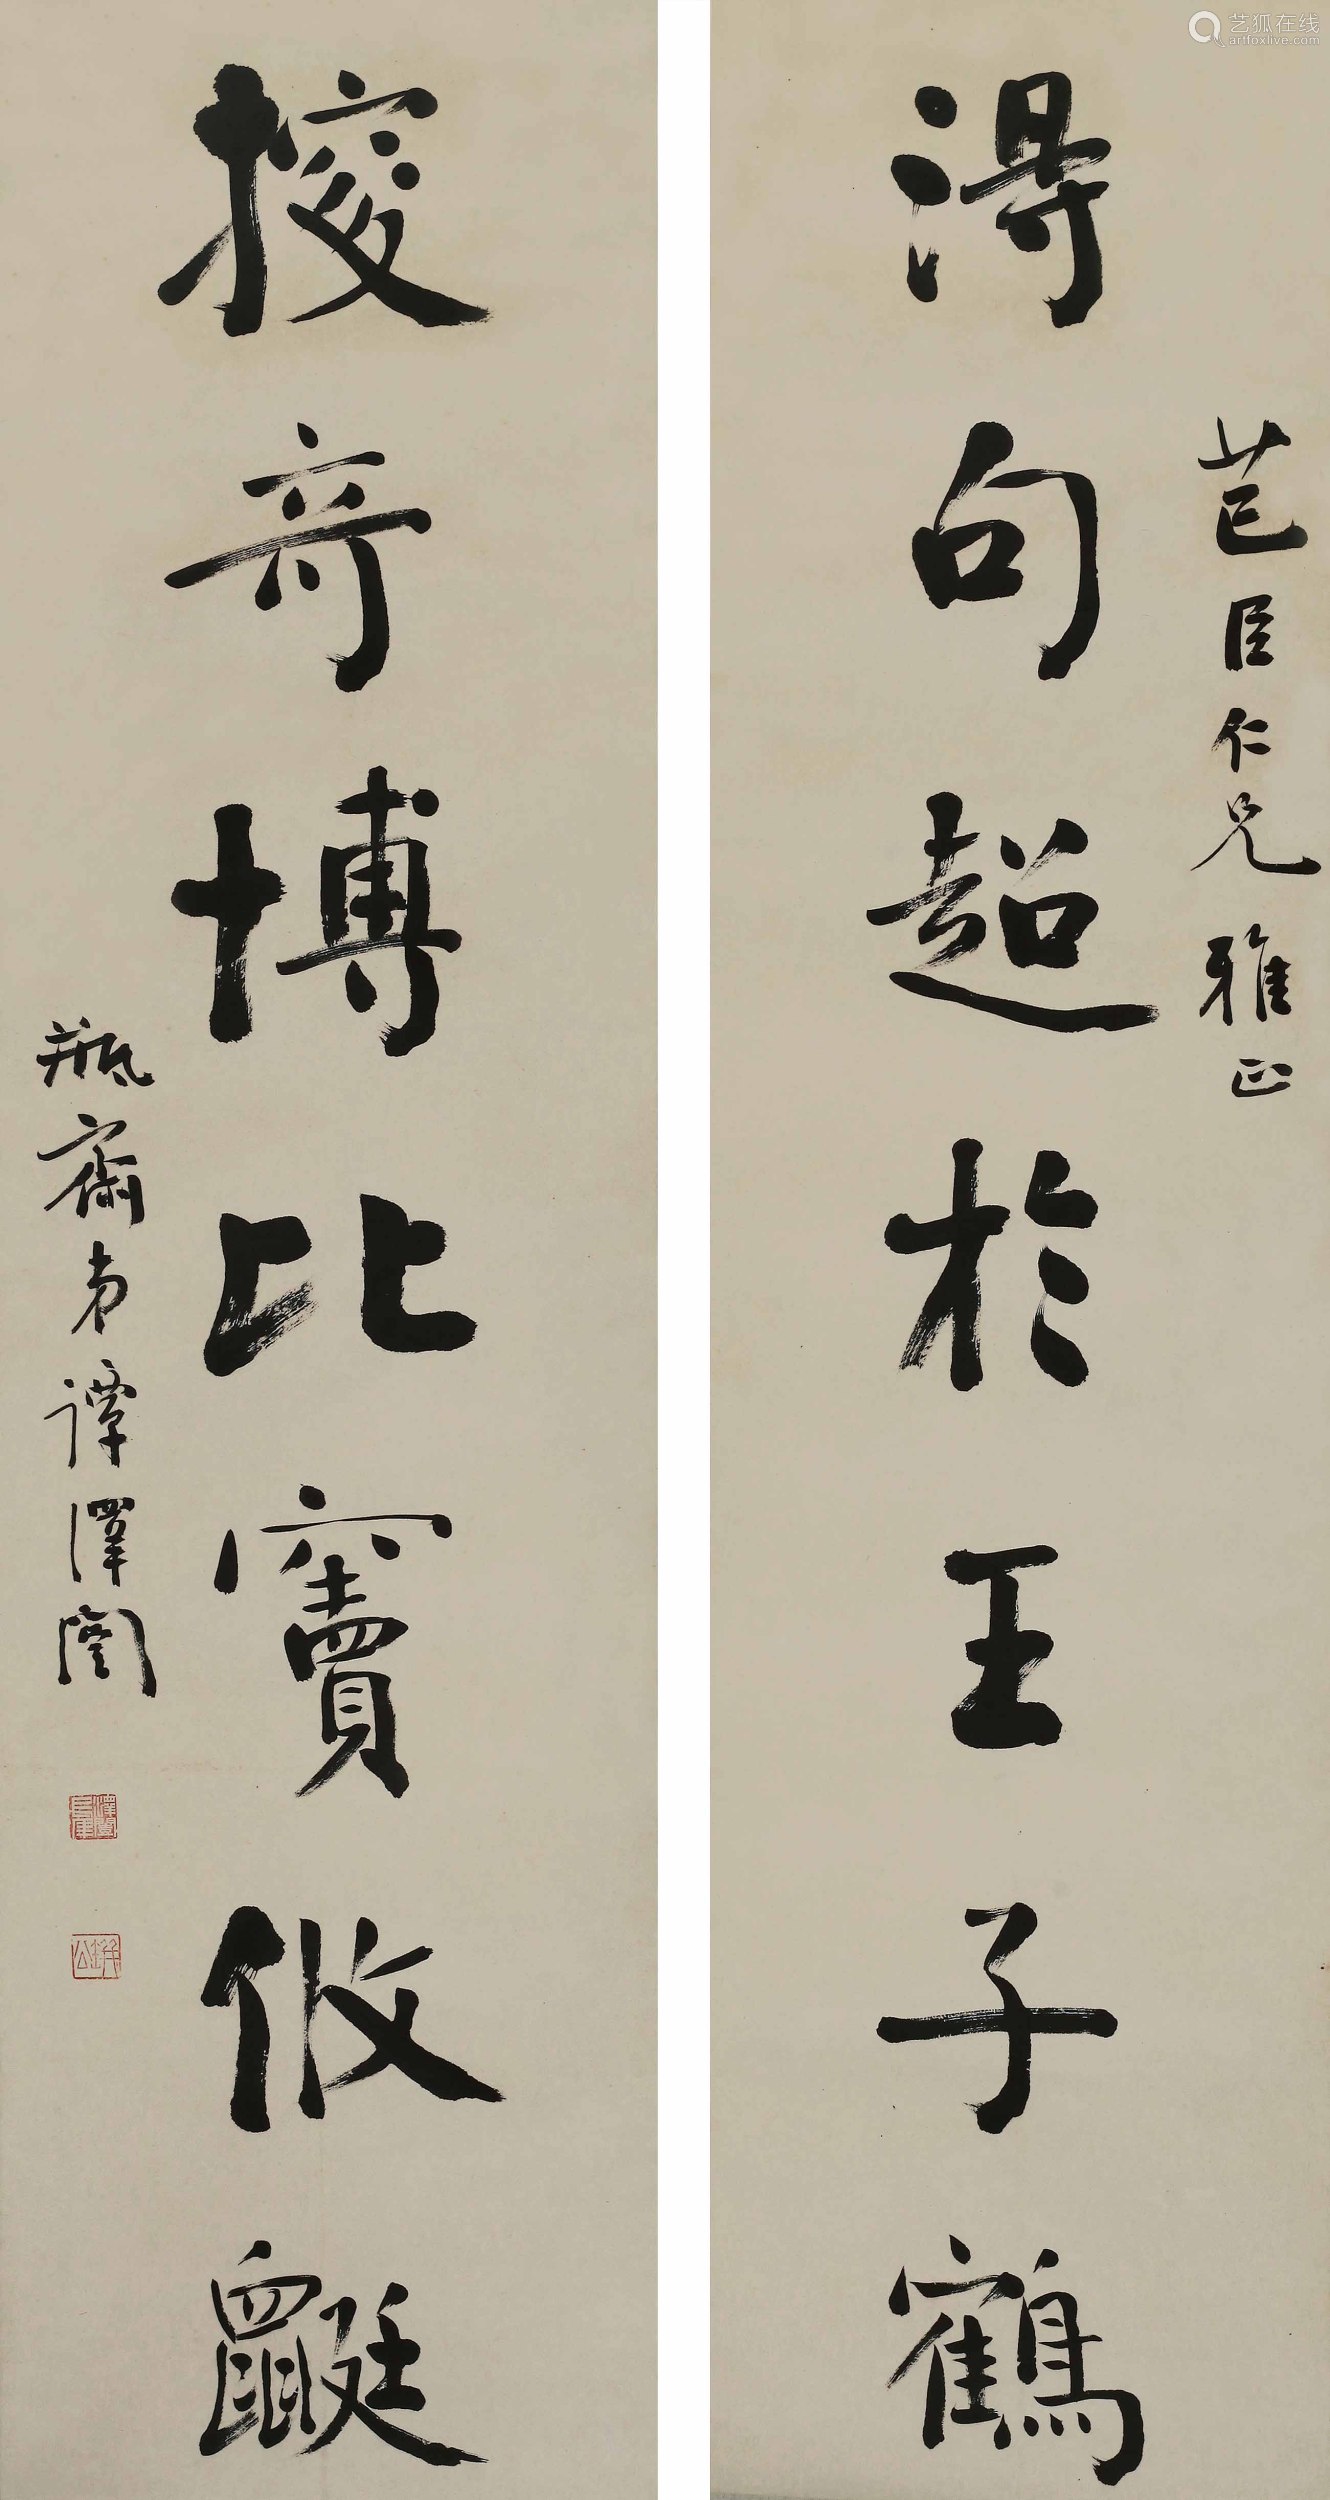 9平尺/幅拍品描述水墨纸本立轴谭泽闿(1889-1948)湖南茶陵人,近代书法